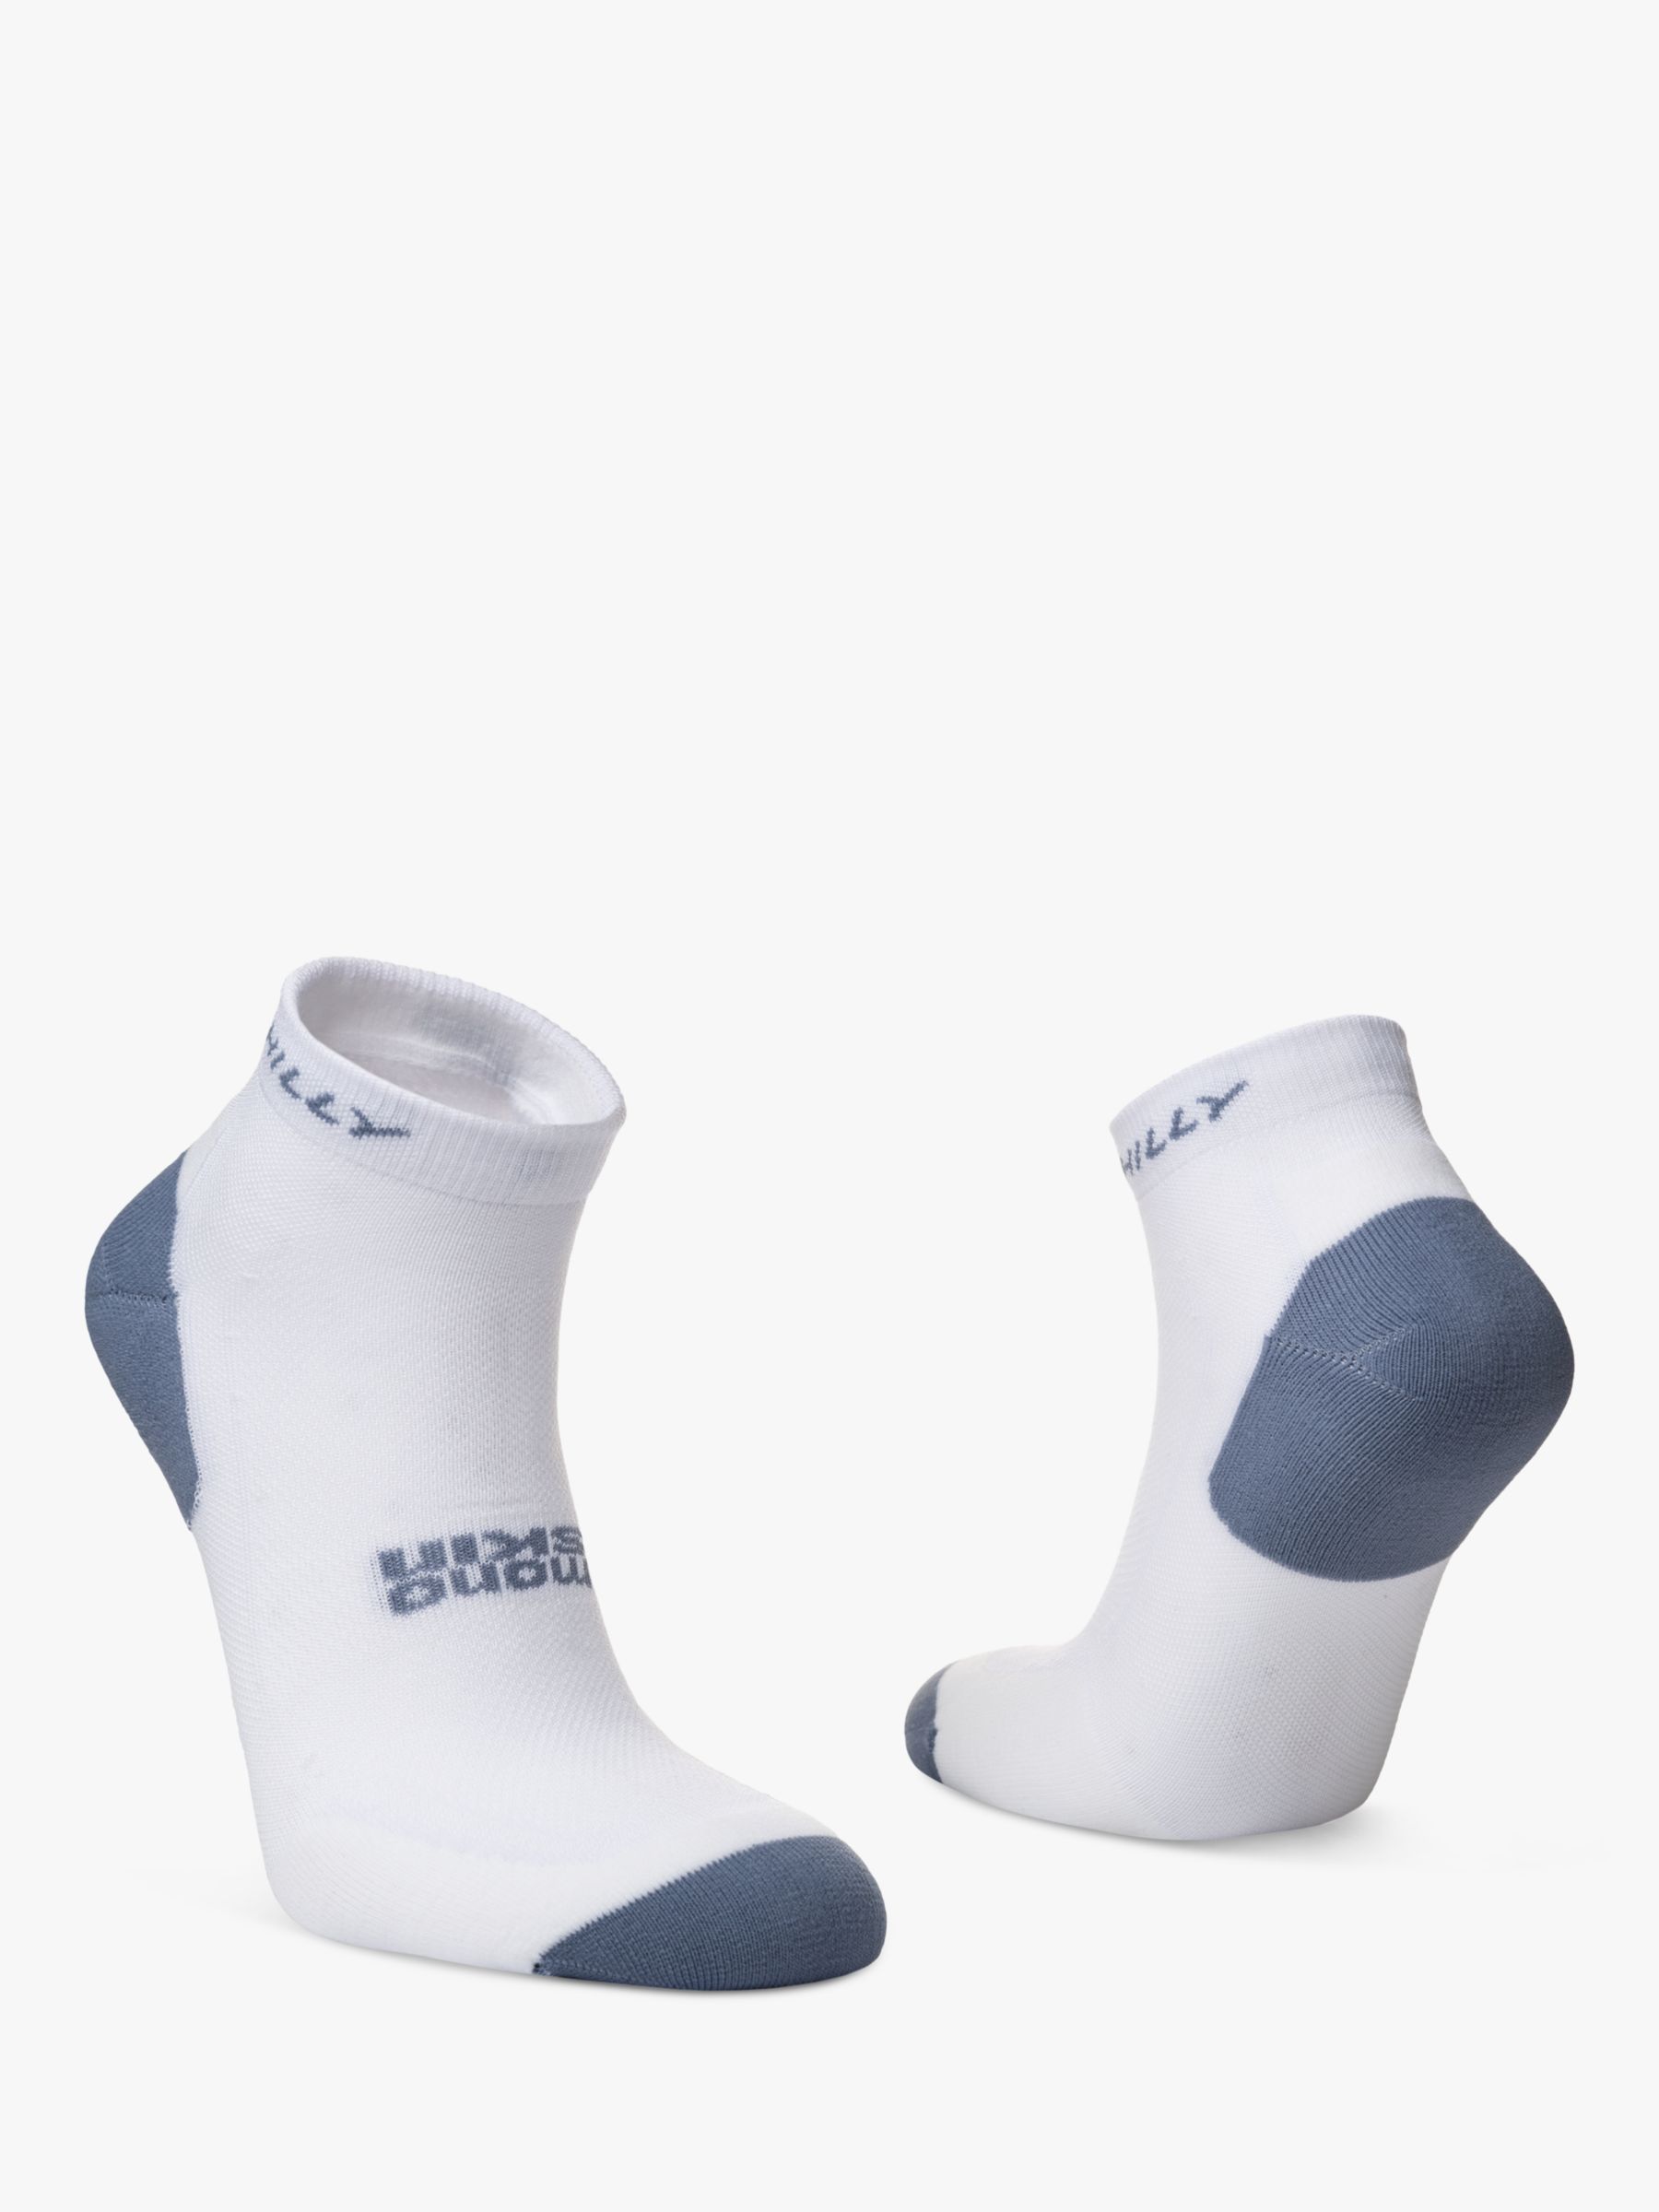 Hilly Active Quarter Length Running Socks, Pack of 2, White/Black/Grey, S